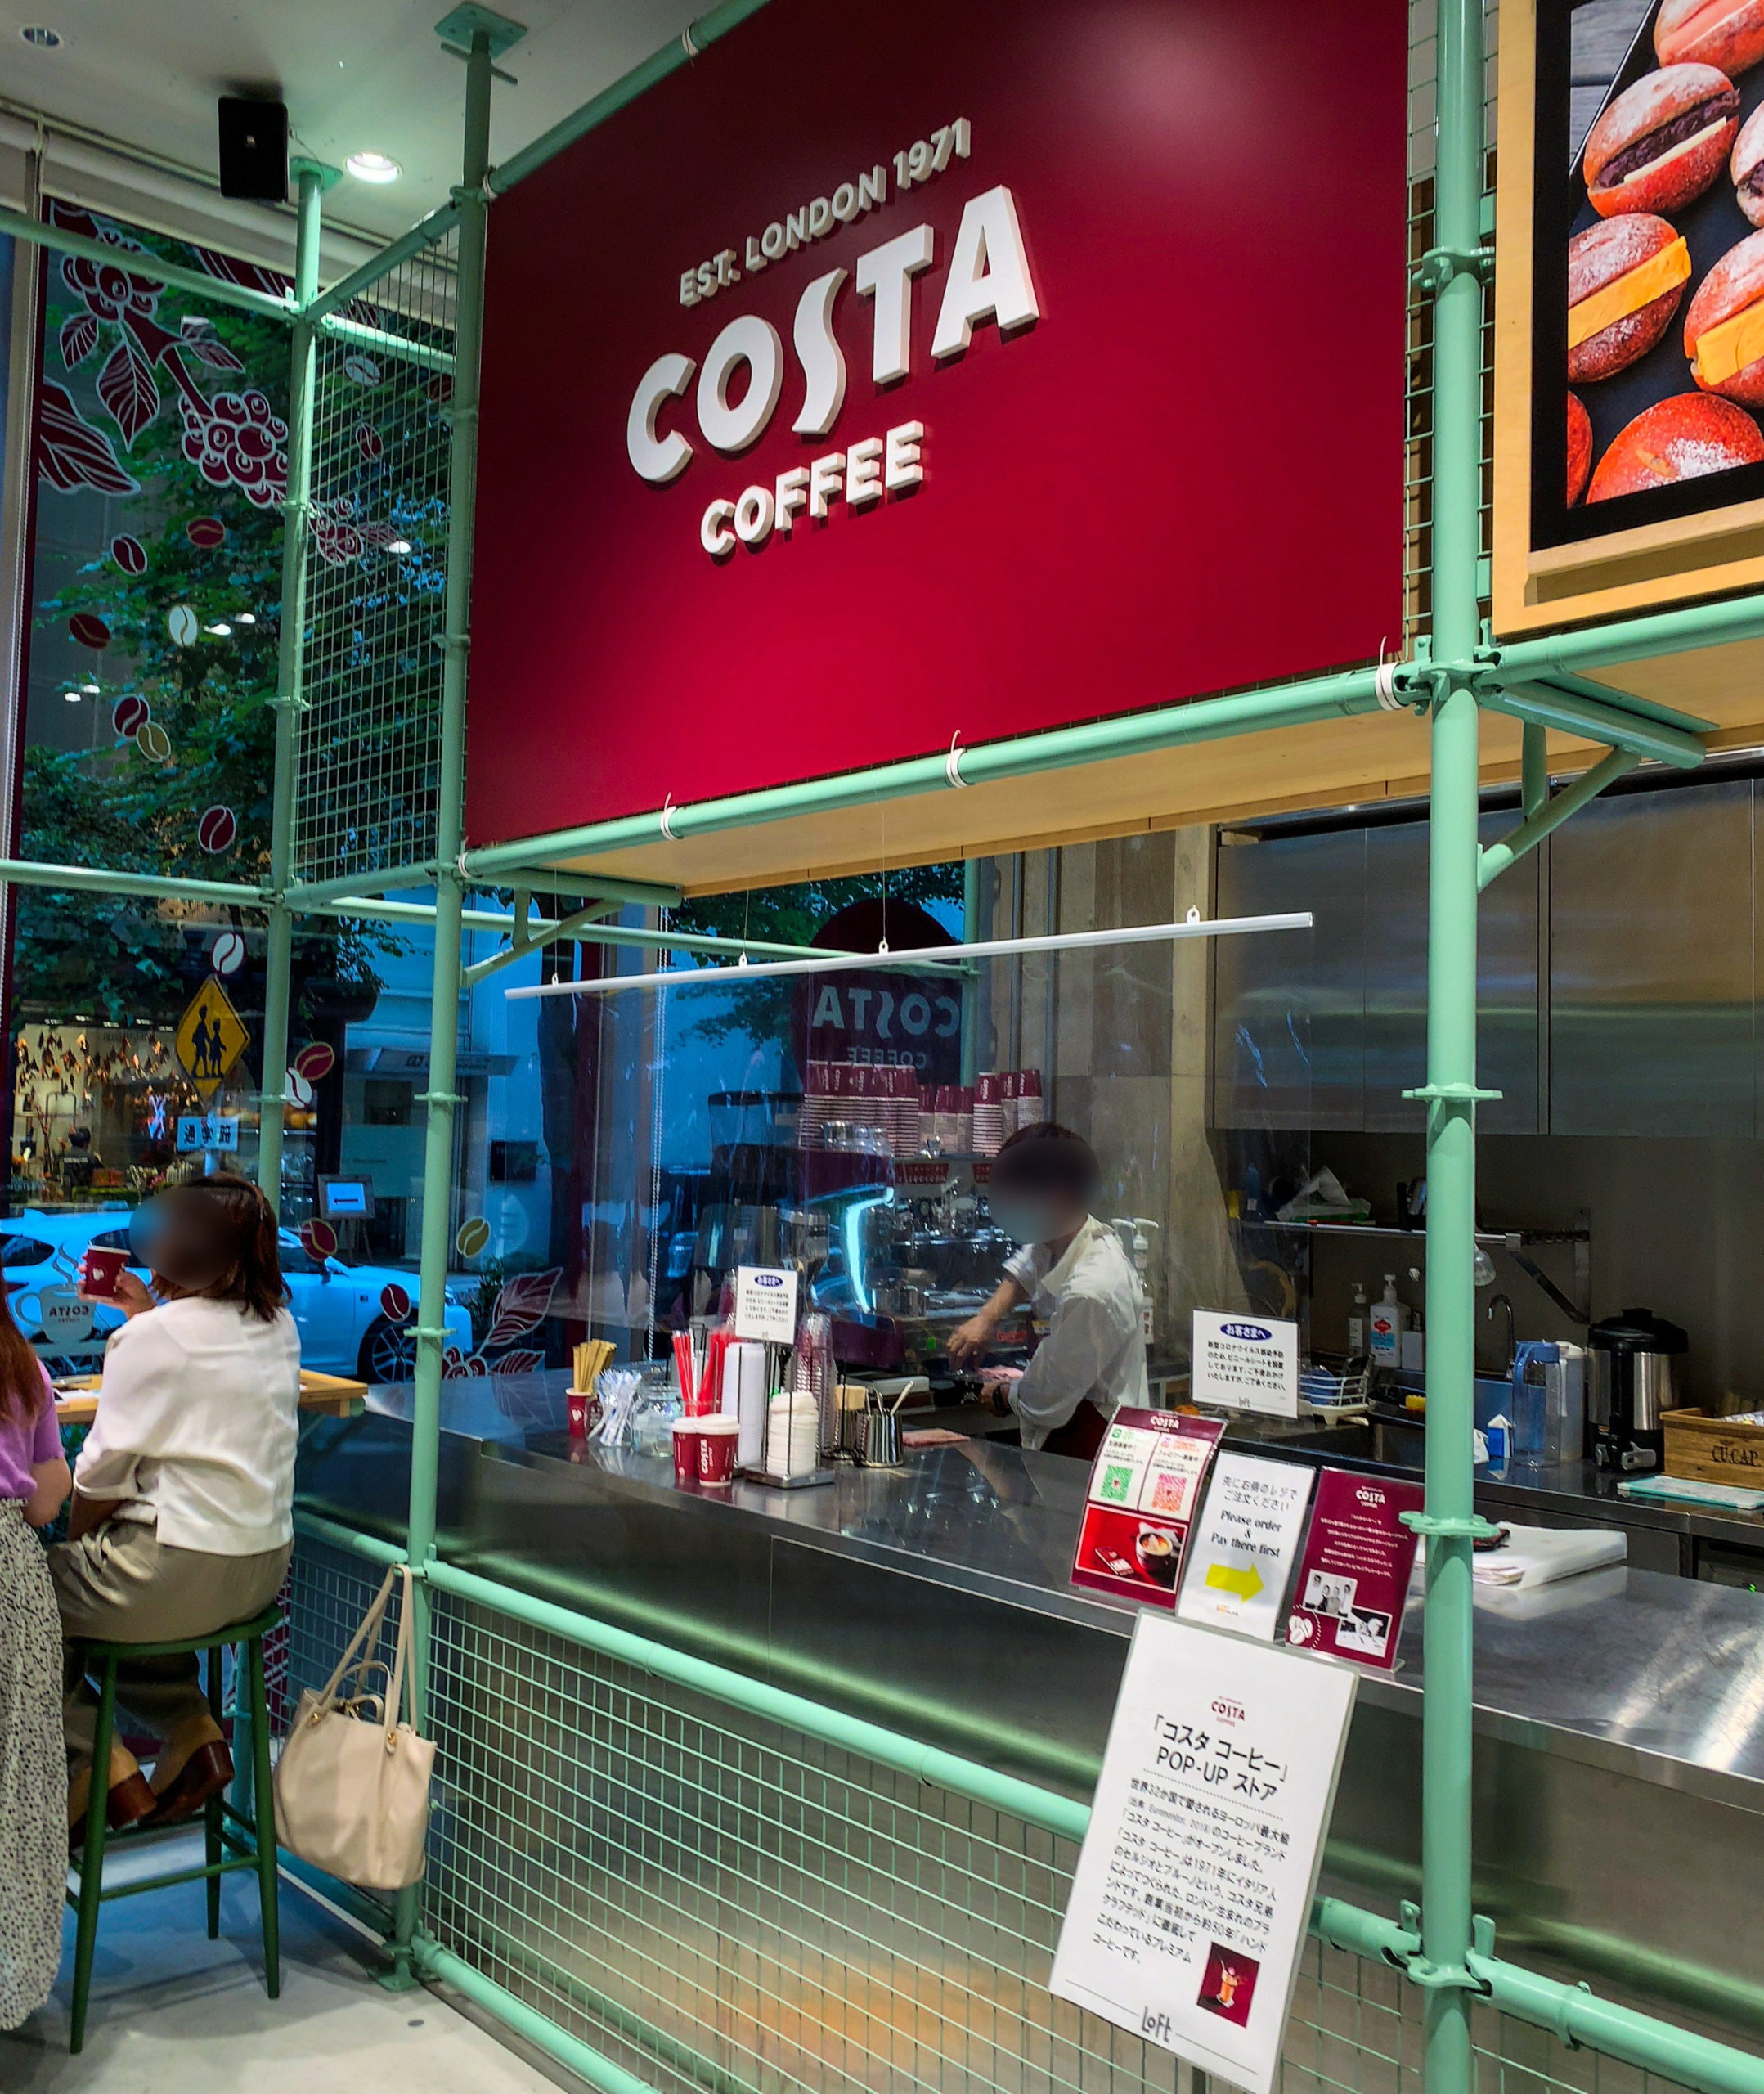 イギリスのコーヒーチェーン「Costa Coffee」が銀座でPOP UPショップ 